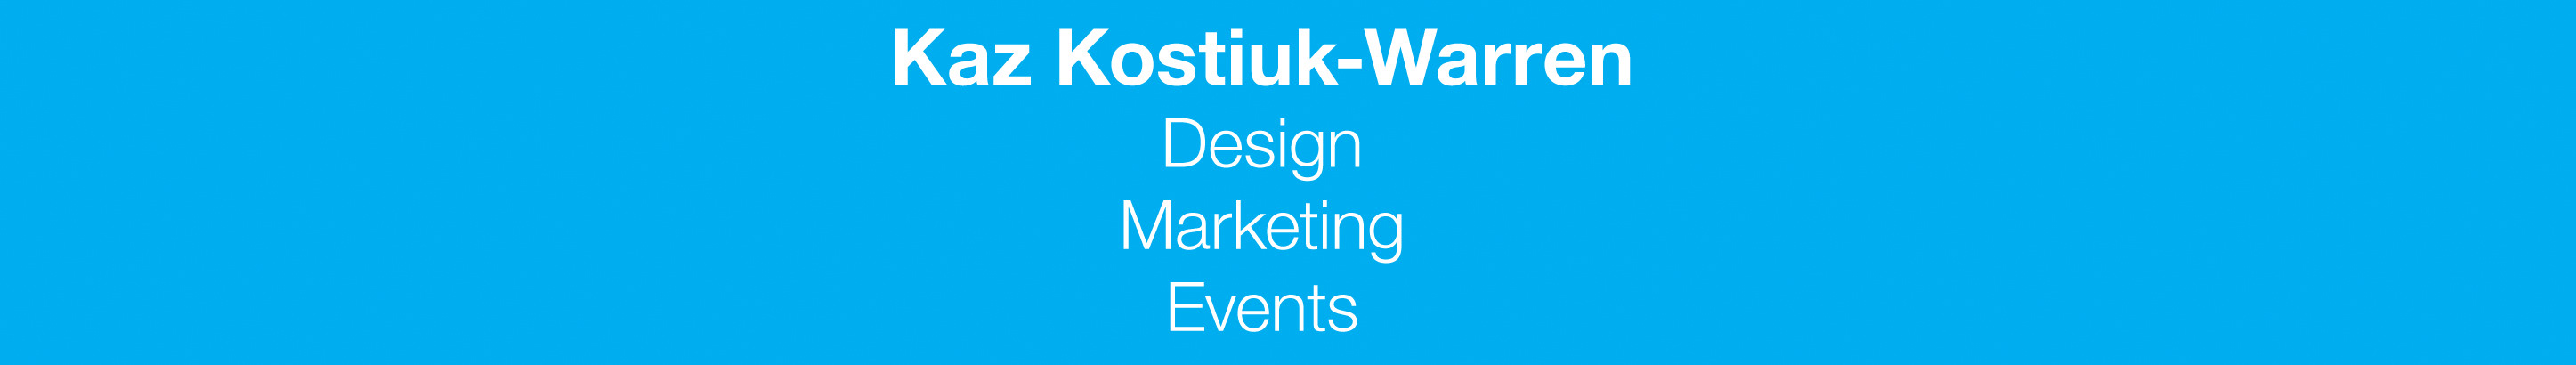 Kaz Kostiuk-Warren's profile banner